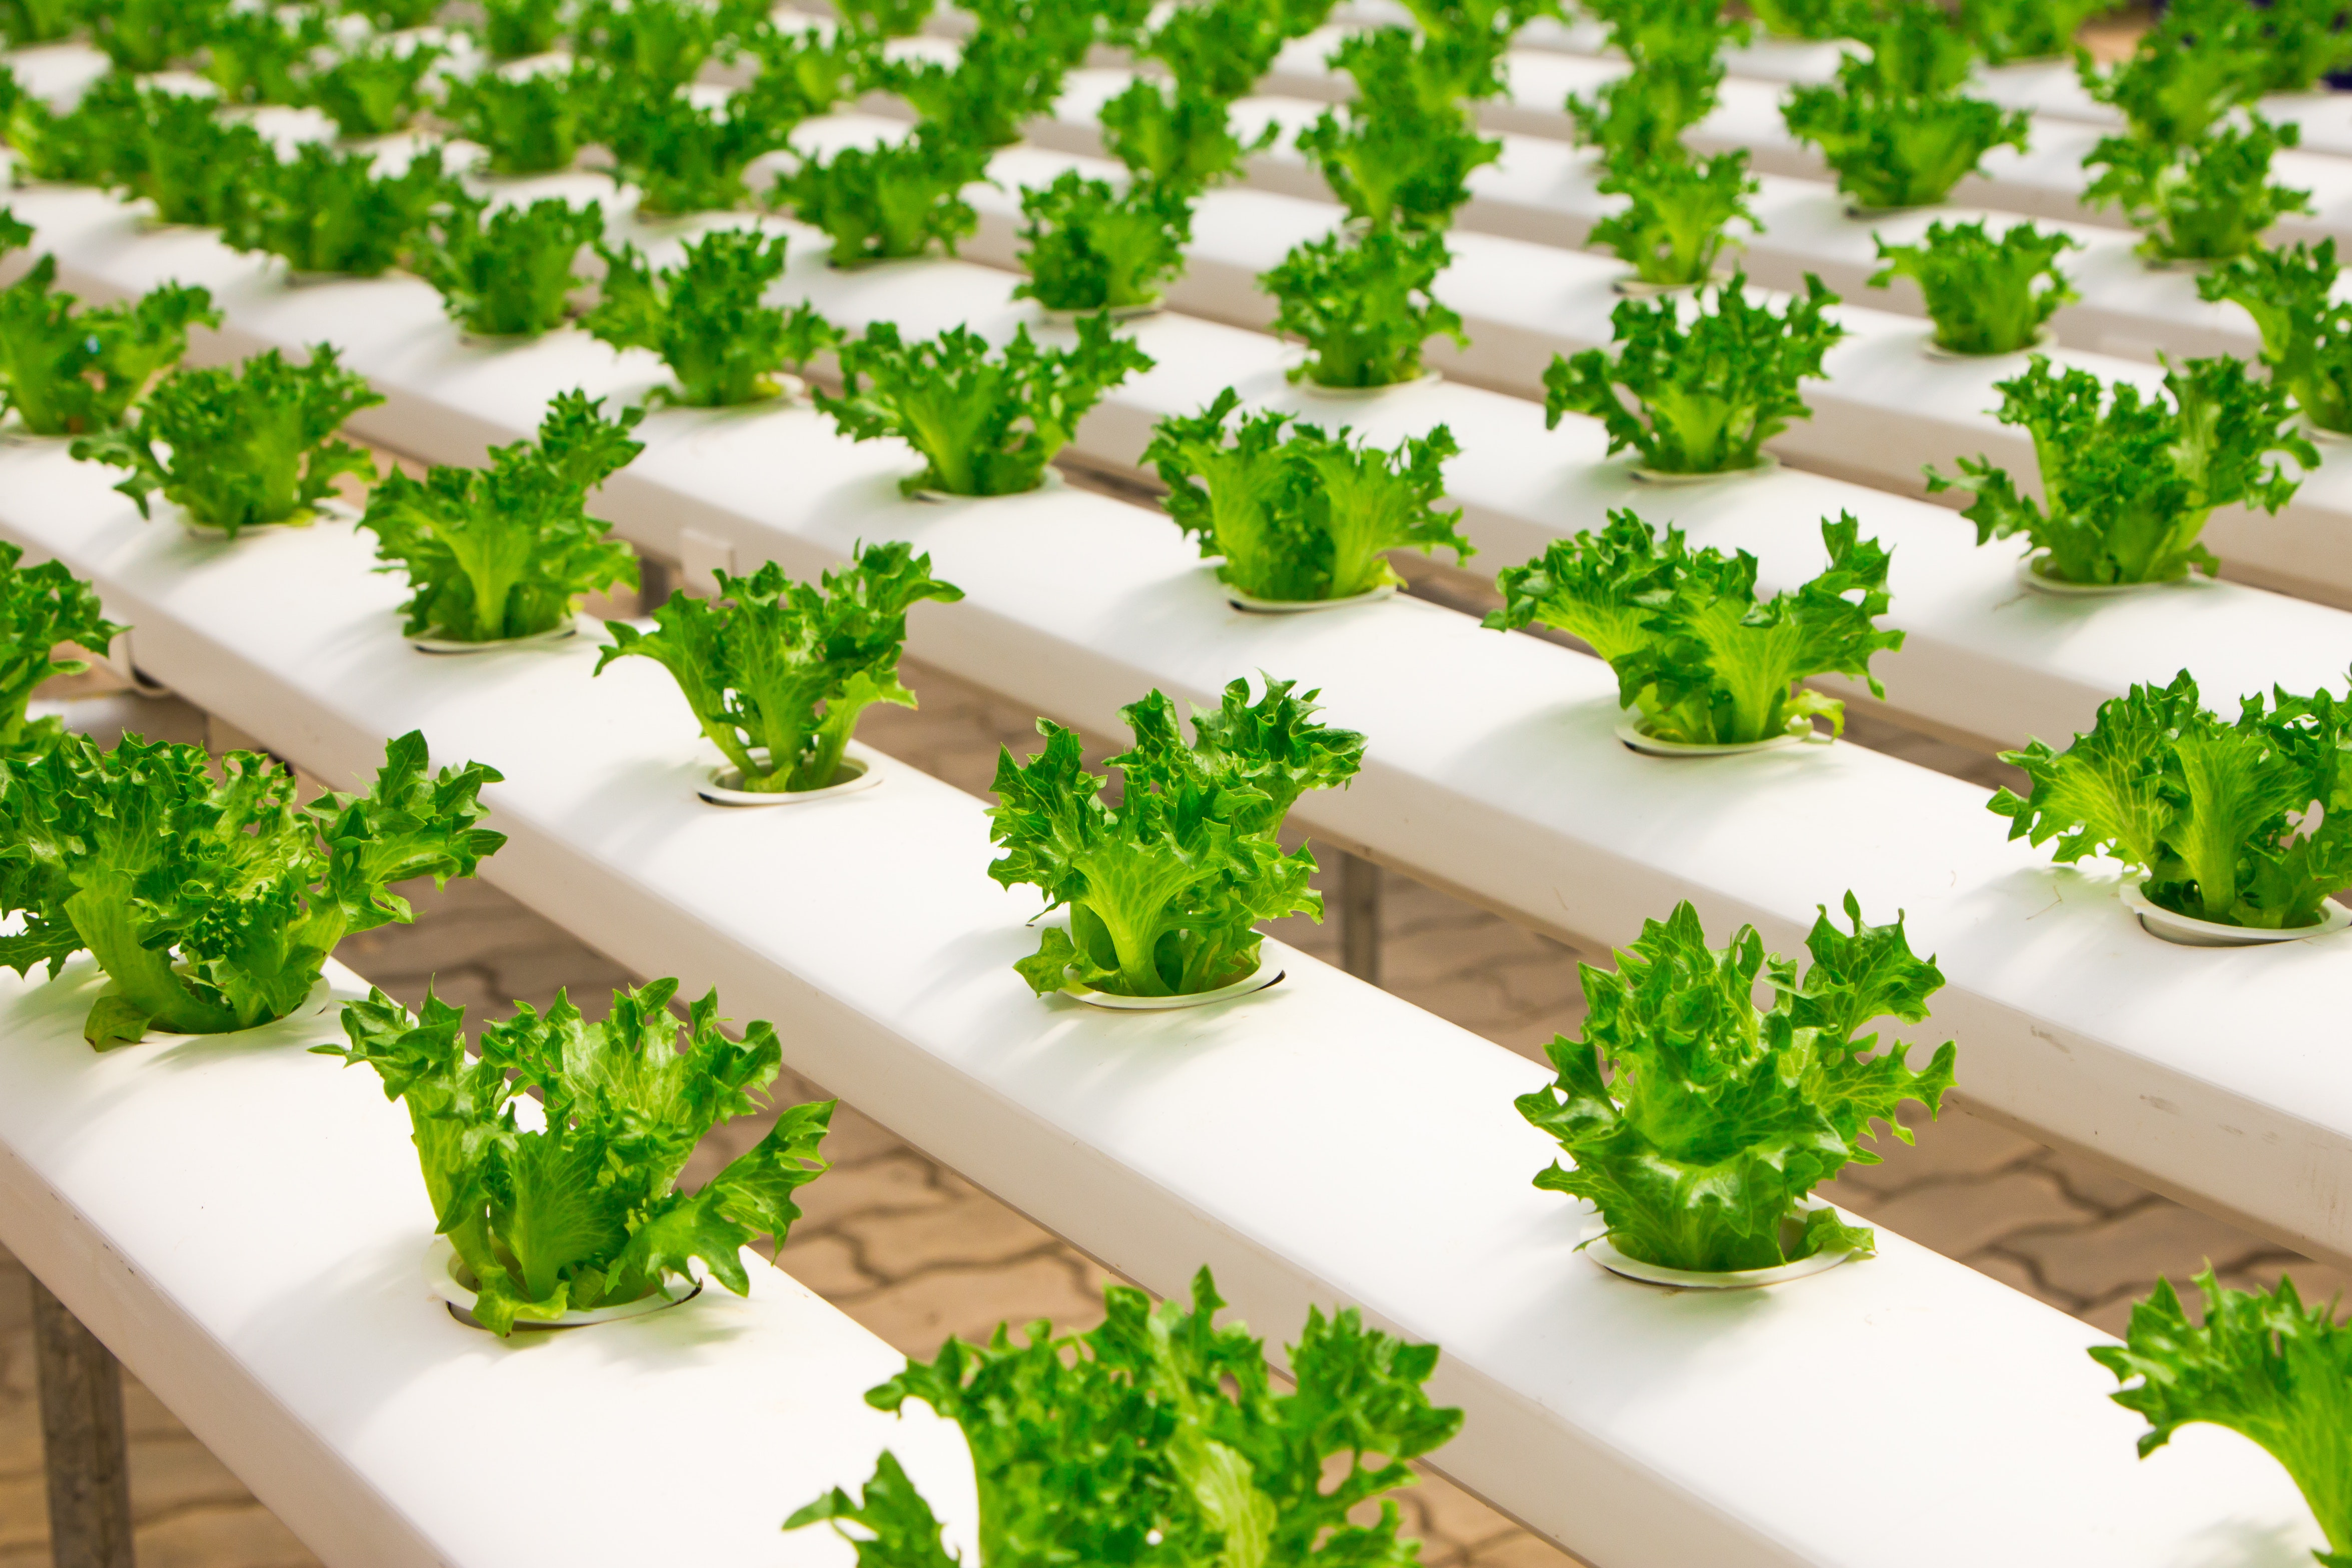 Indoor Farming ปลูกพืชยุคใหม่ ไทยพร้อมหรือยัง? | Techsauce